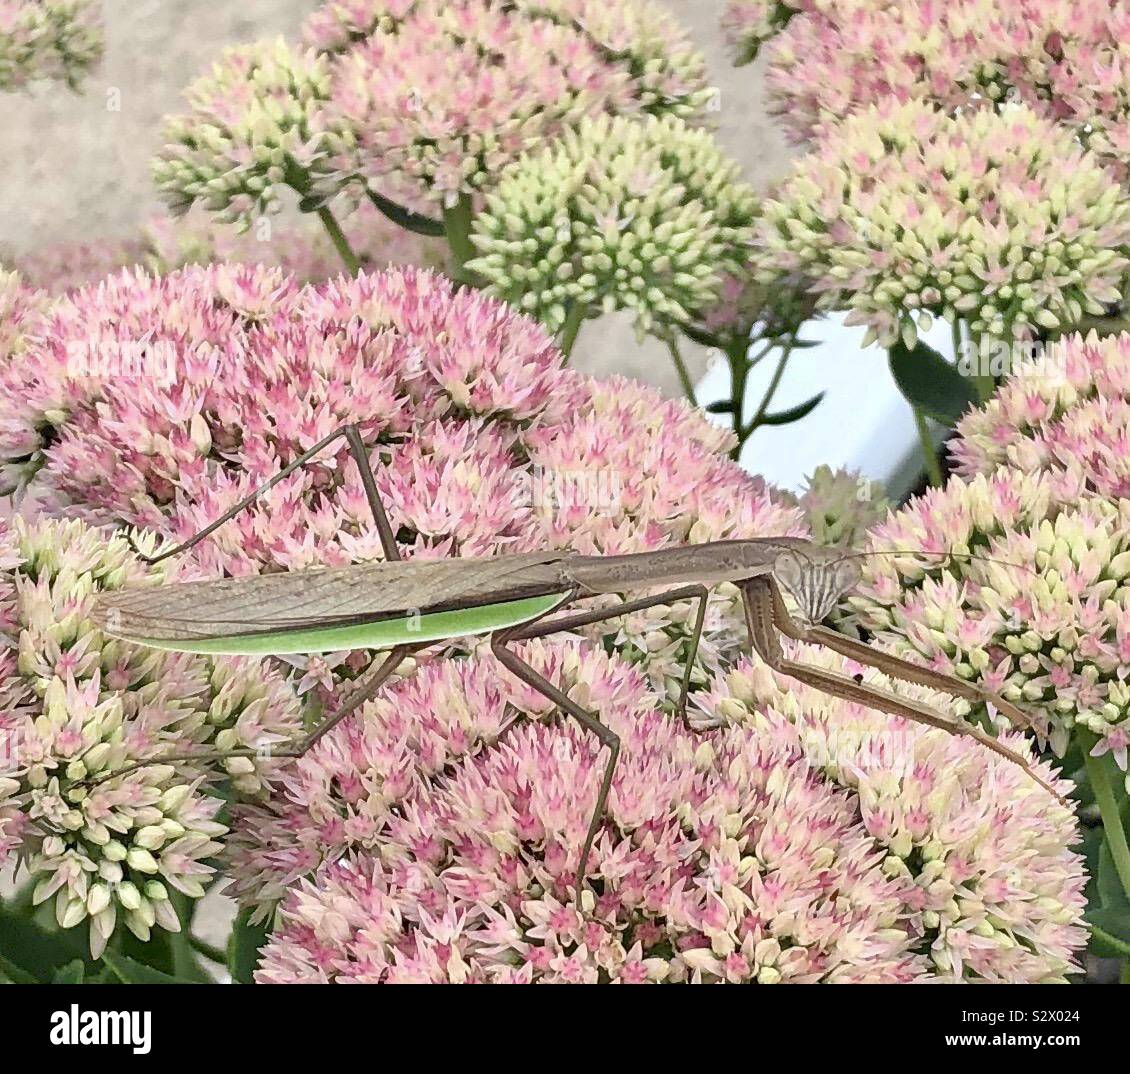 Green Praying mantis bug on pink flowers Stock Photo